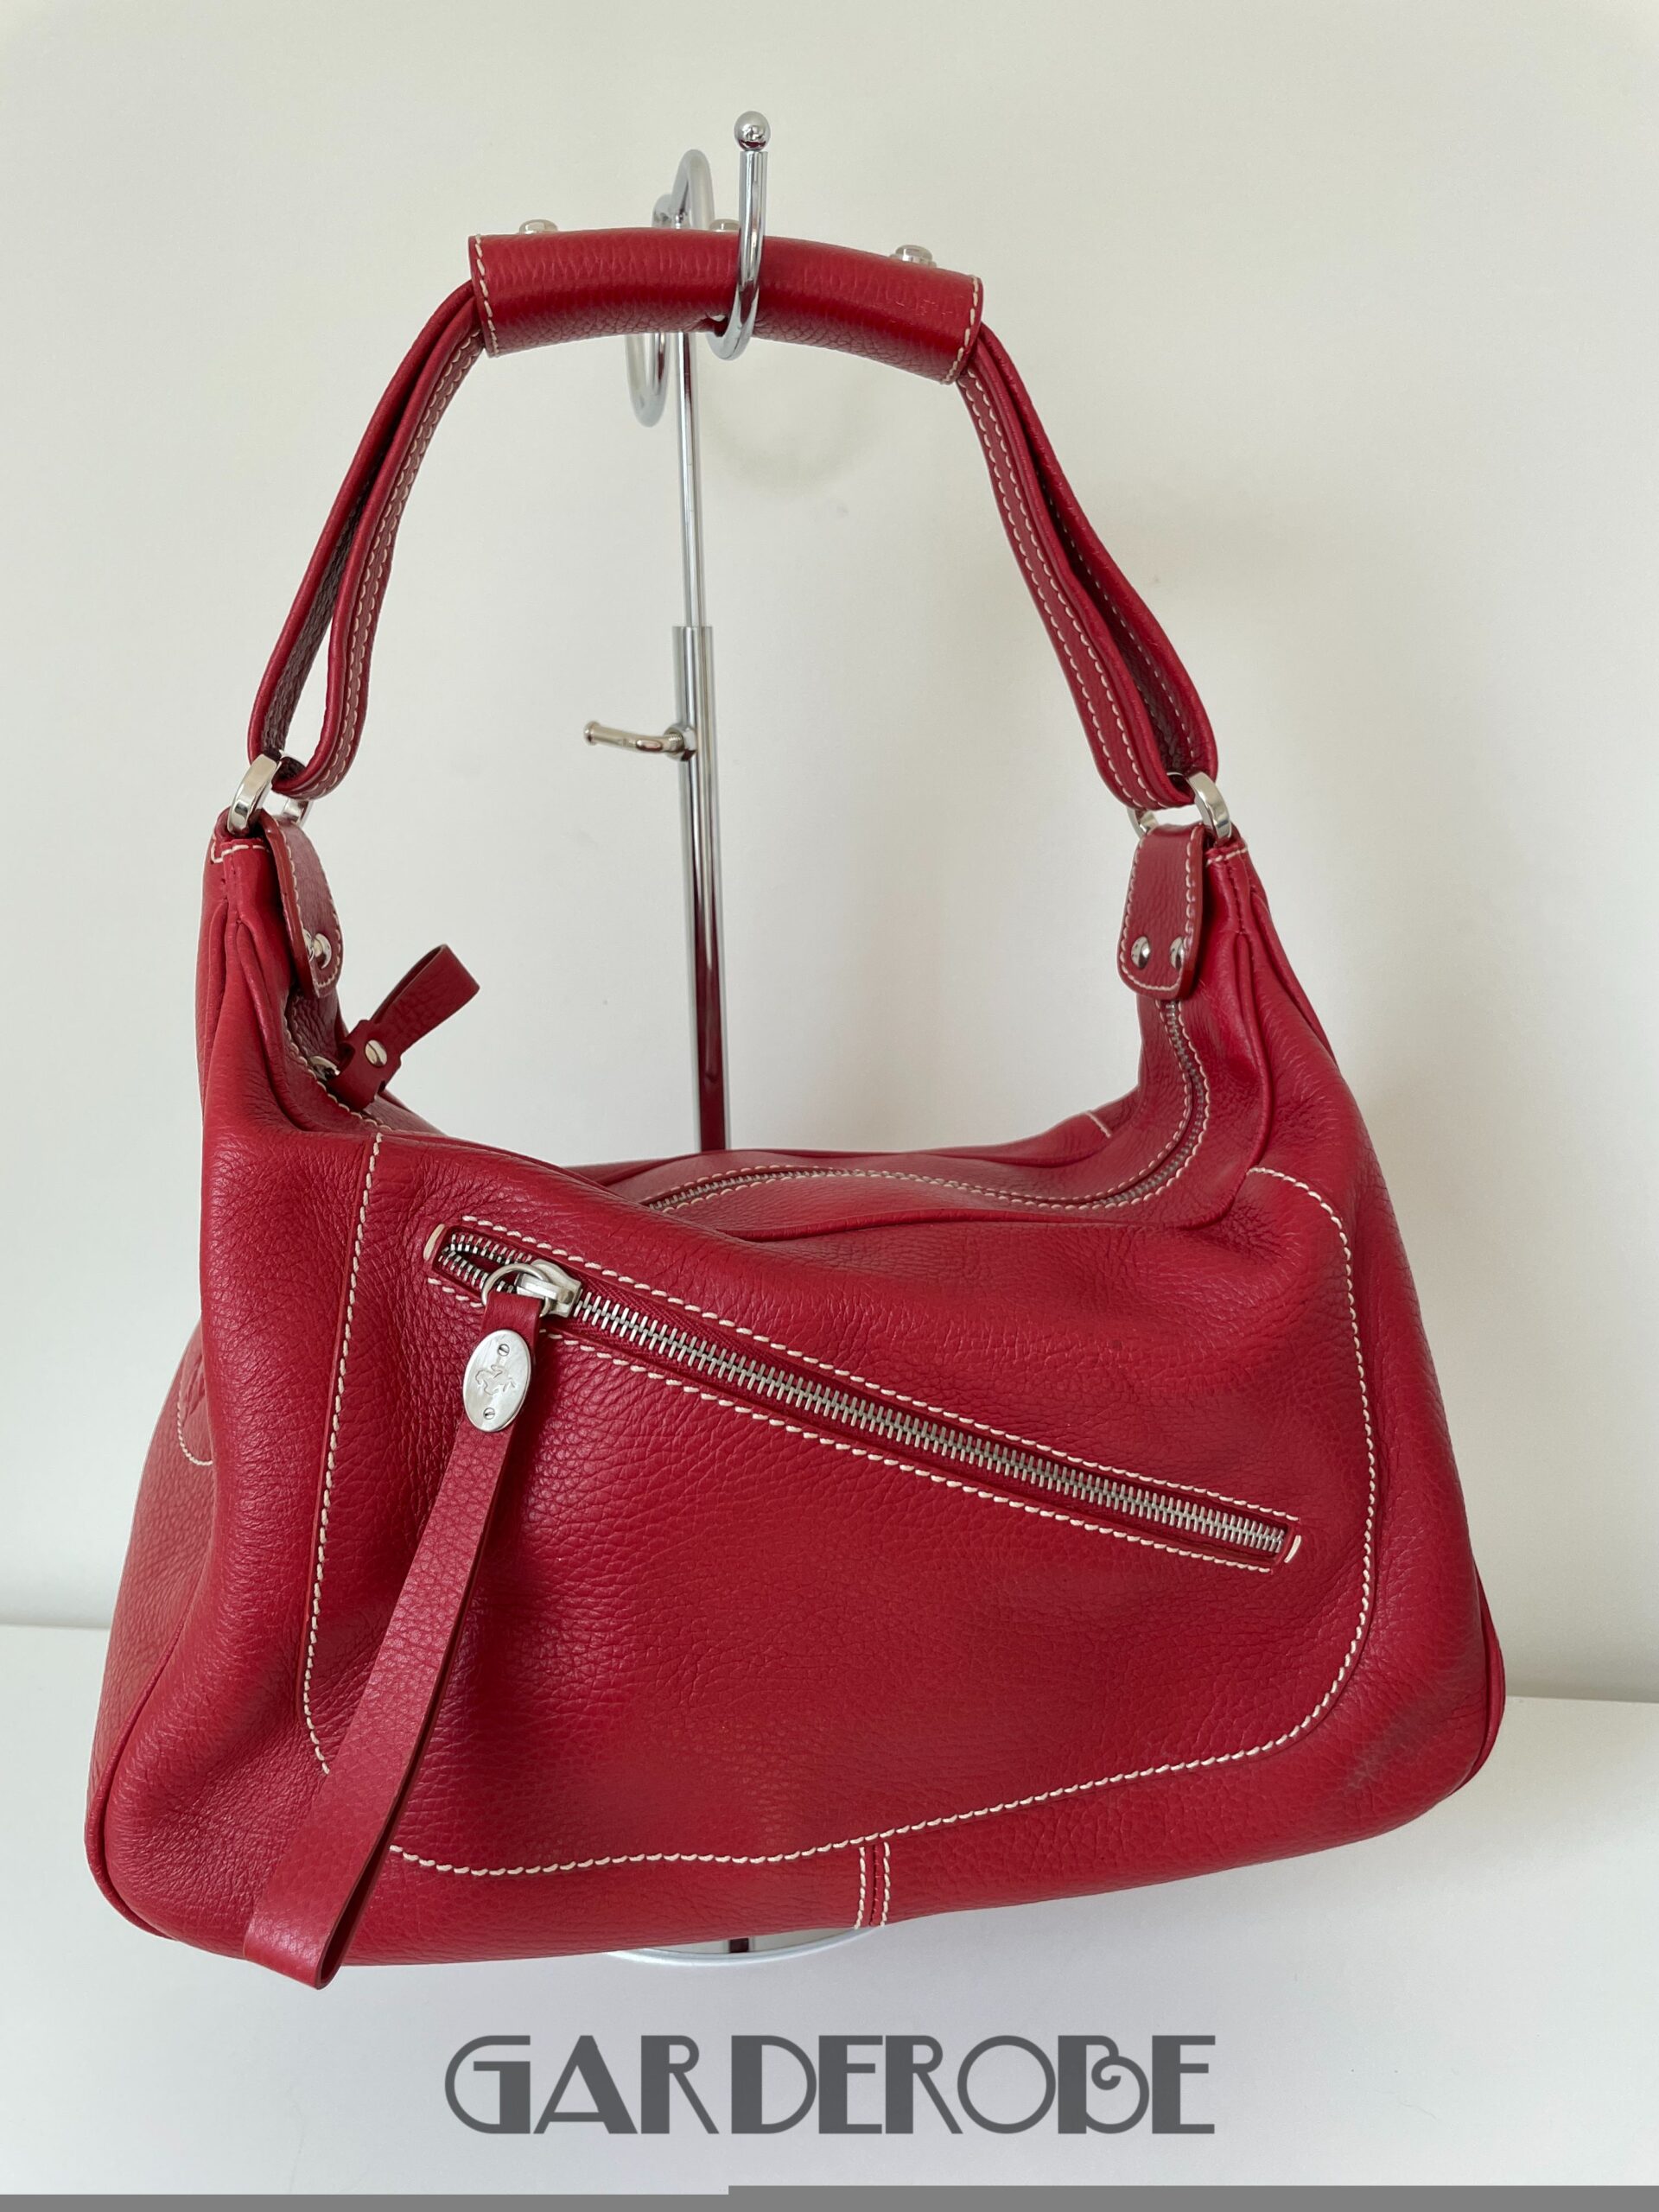 verbrand doe alstublieft niet zaad Rode stevige Tod's handtas zonder gebruikssporen - Garderobe Vintage  Kortrijk